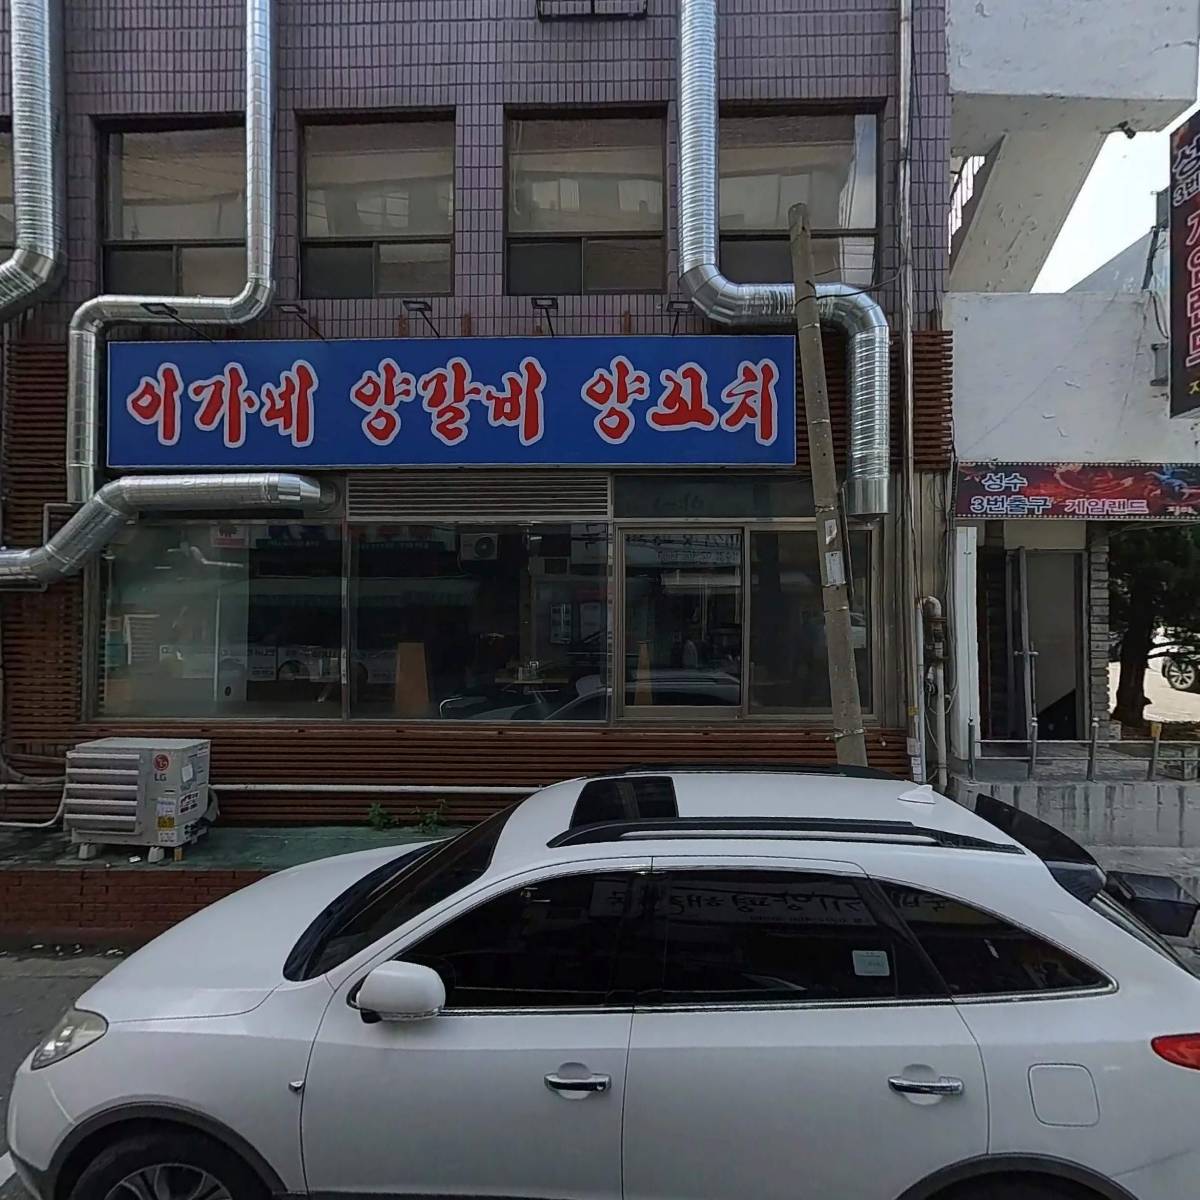 동우엔지니어링주식회사